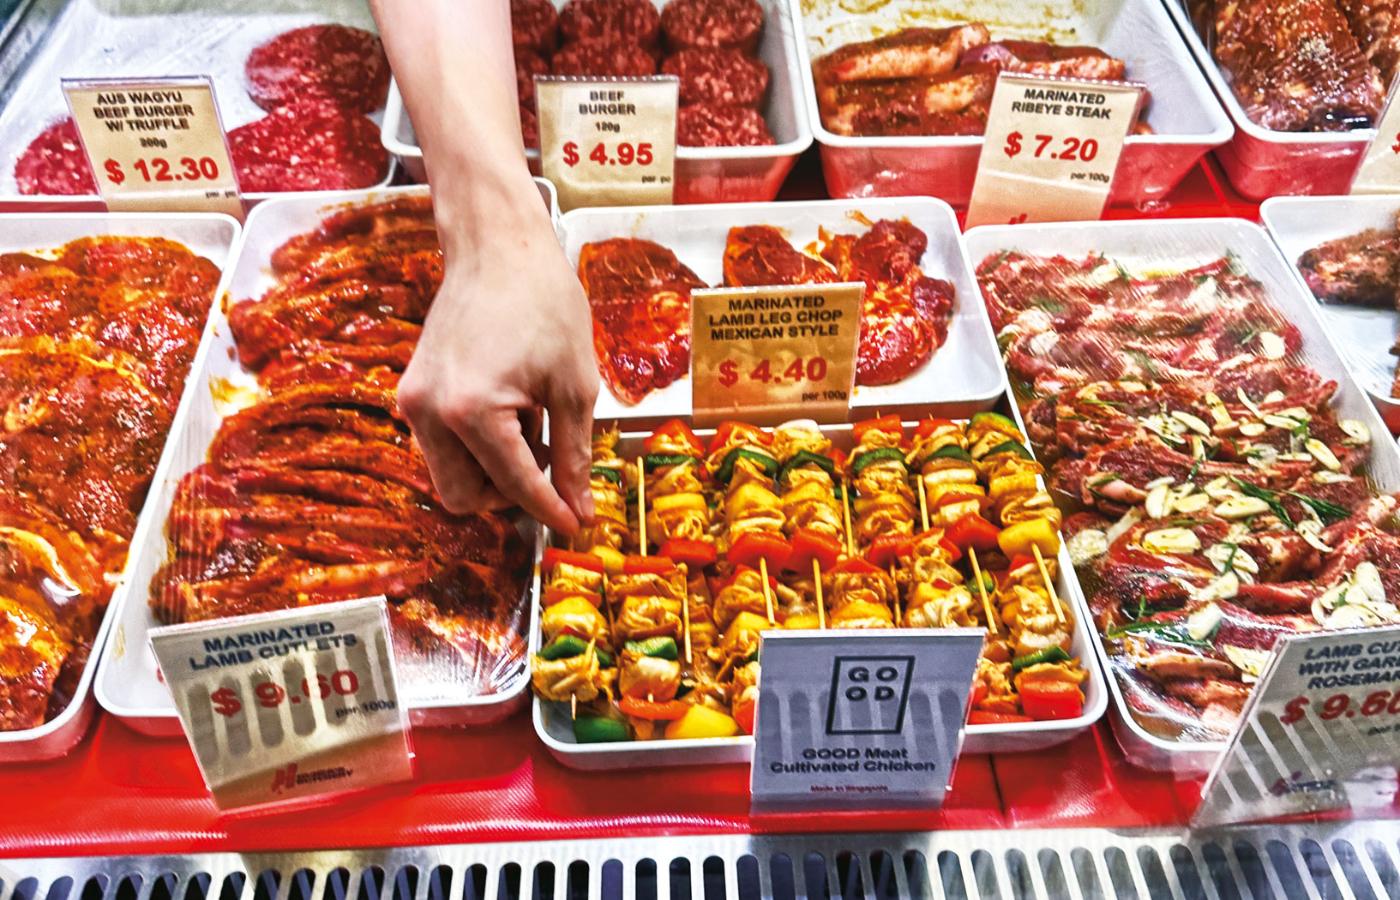 Huber’s Butchery, pierwszy sklep na świecie sprzedający mięso z probówki, Singapur.